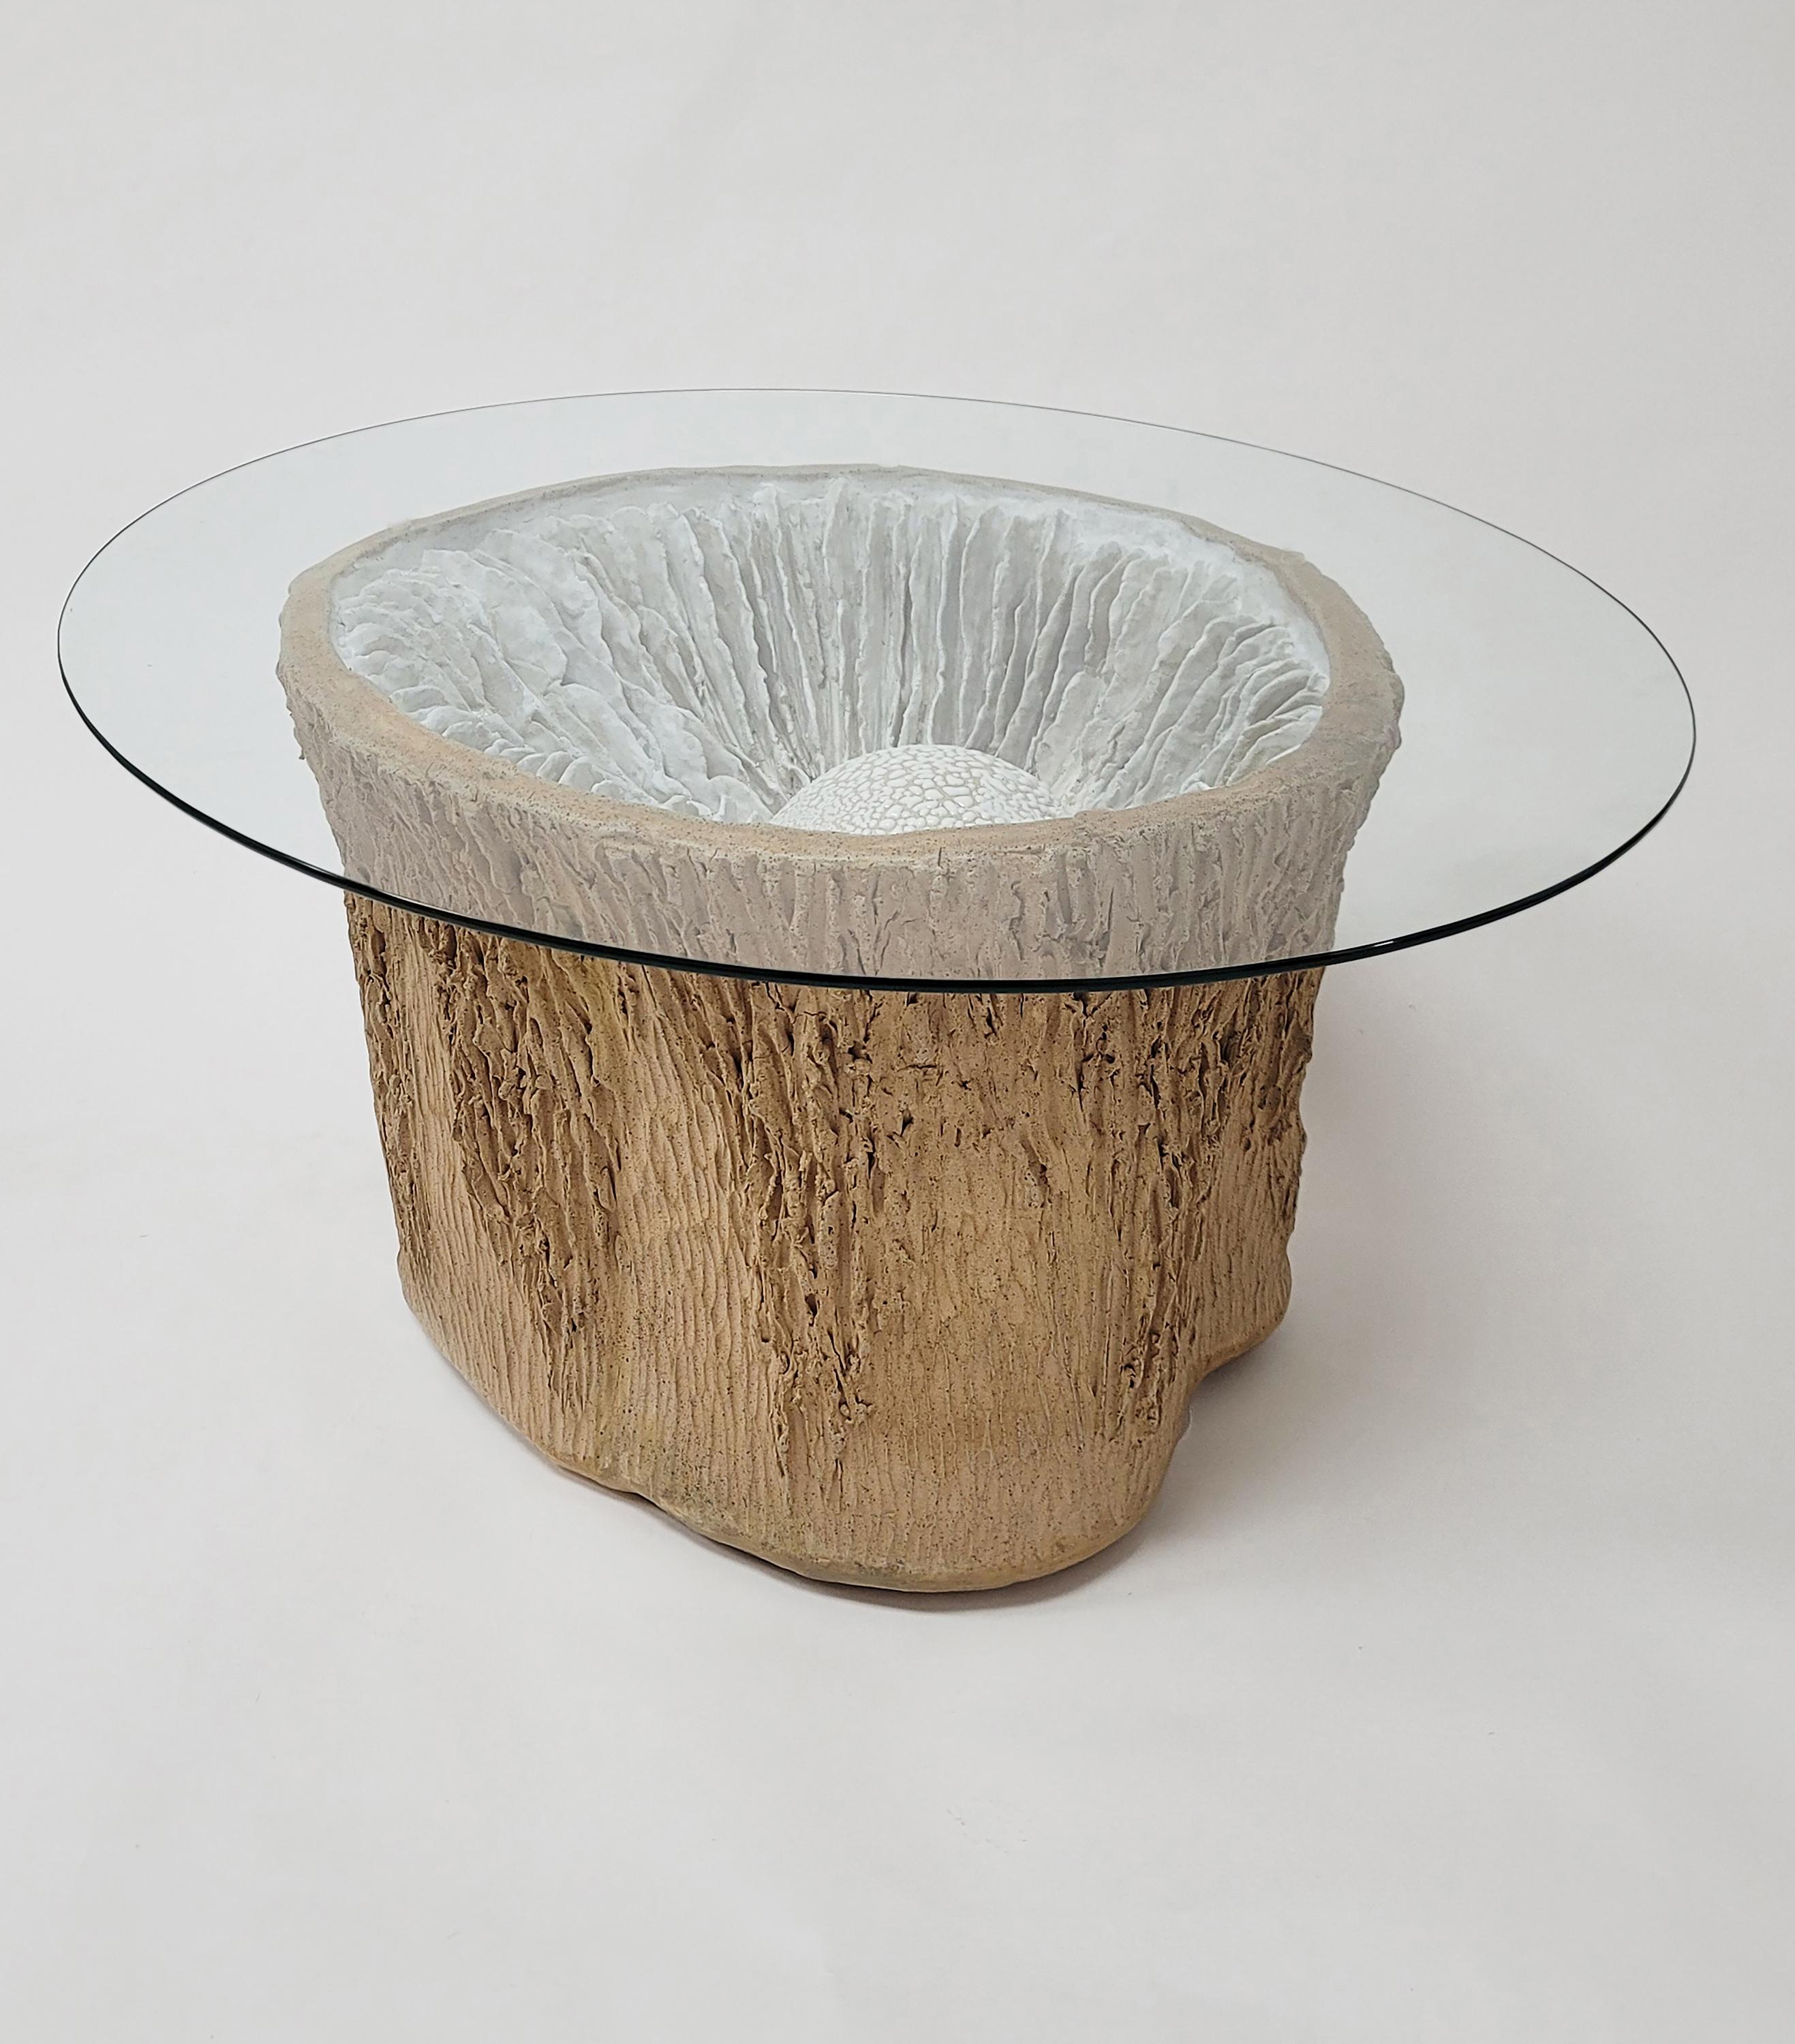 Lamellen-Pod-Tisch, 2022
Glasiertes und rohes Steingut mit Glasplatte
Maße: 16,5 x 34 x 28 Zoll 
Oberteil: 34 x 28 Zoll; Unterteil: 24 x 20 in.